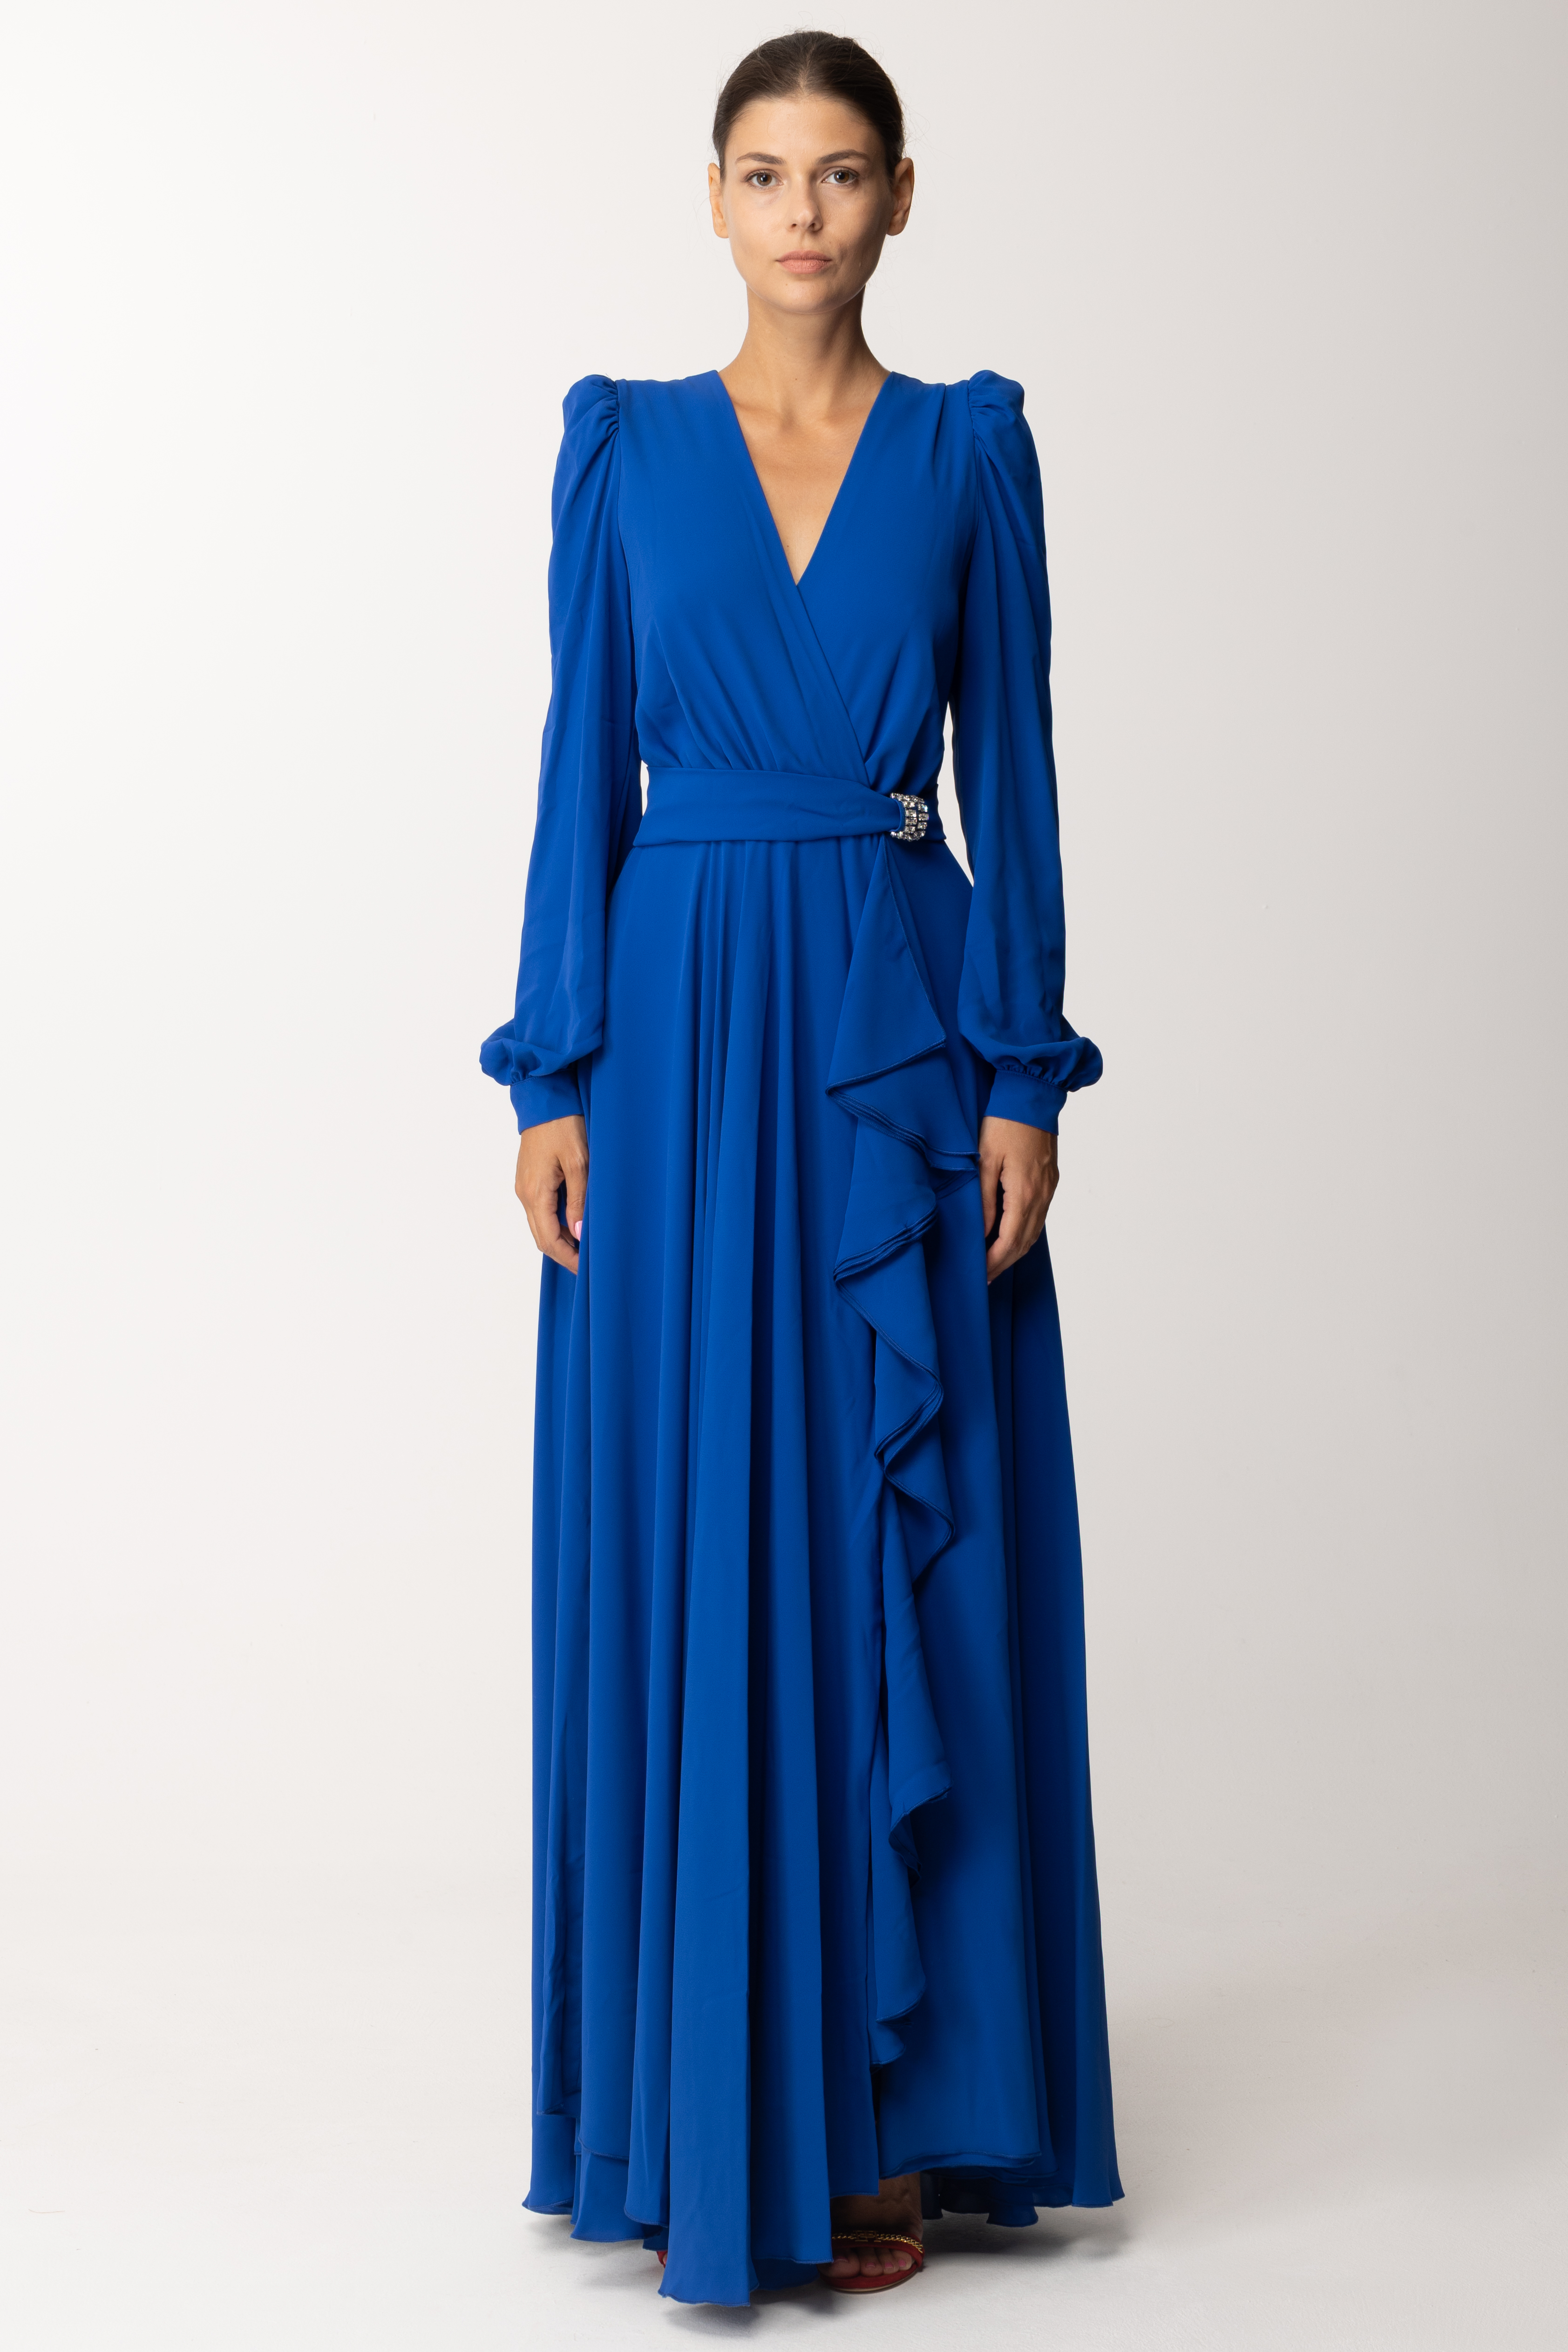 Podgląd: Dramèe Długa sukienka z falbankami i paskiem Blu